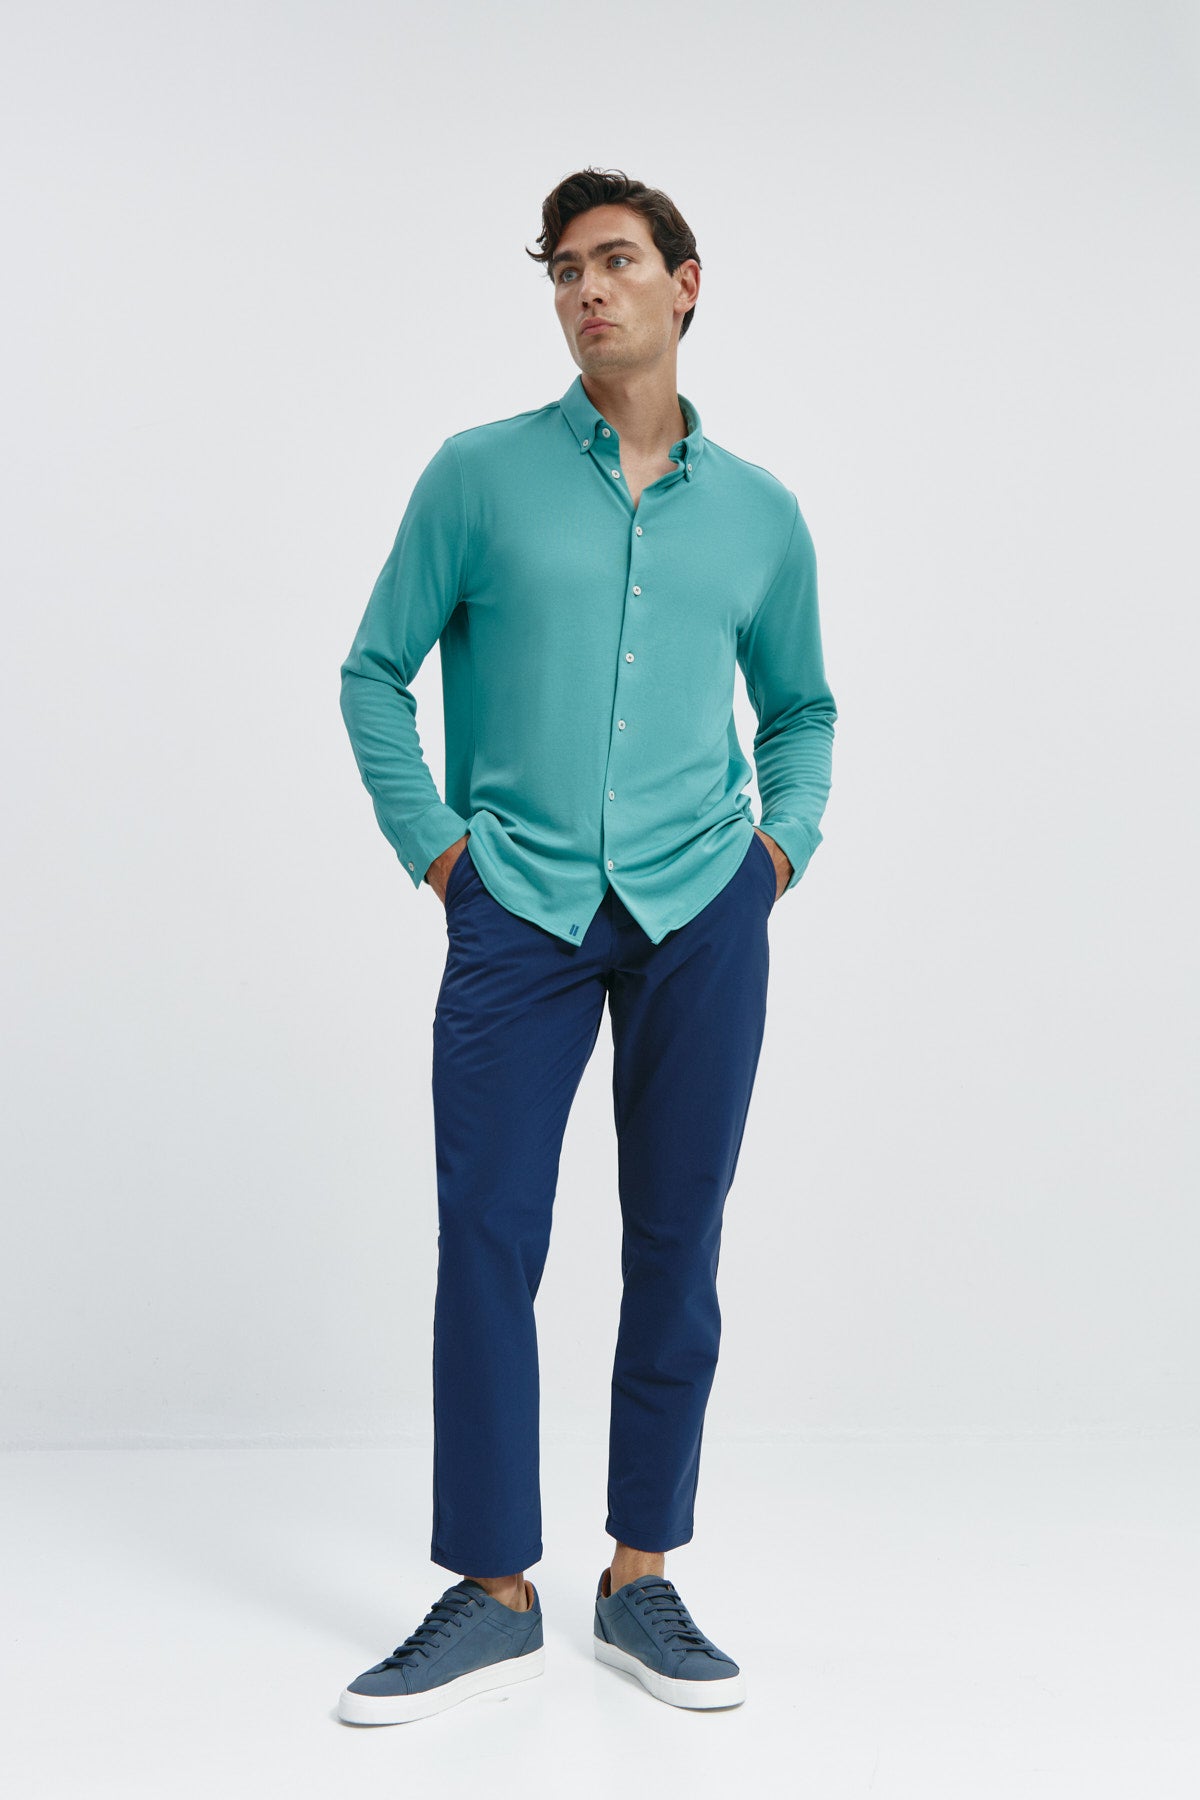 Camisa casual de hombre verde clorofila regular de Sepiia, estilo y versatilidad en una prenda duradera. Foto cuerpo completo